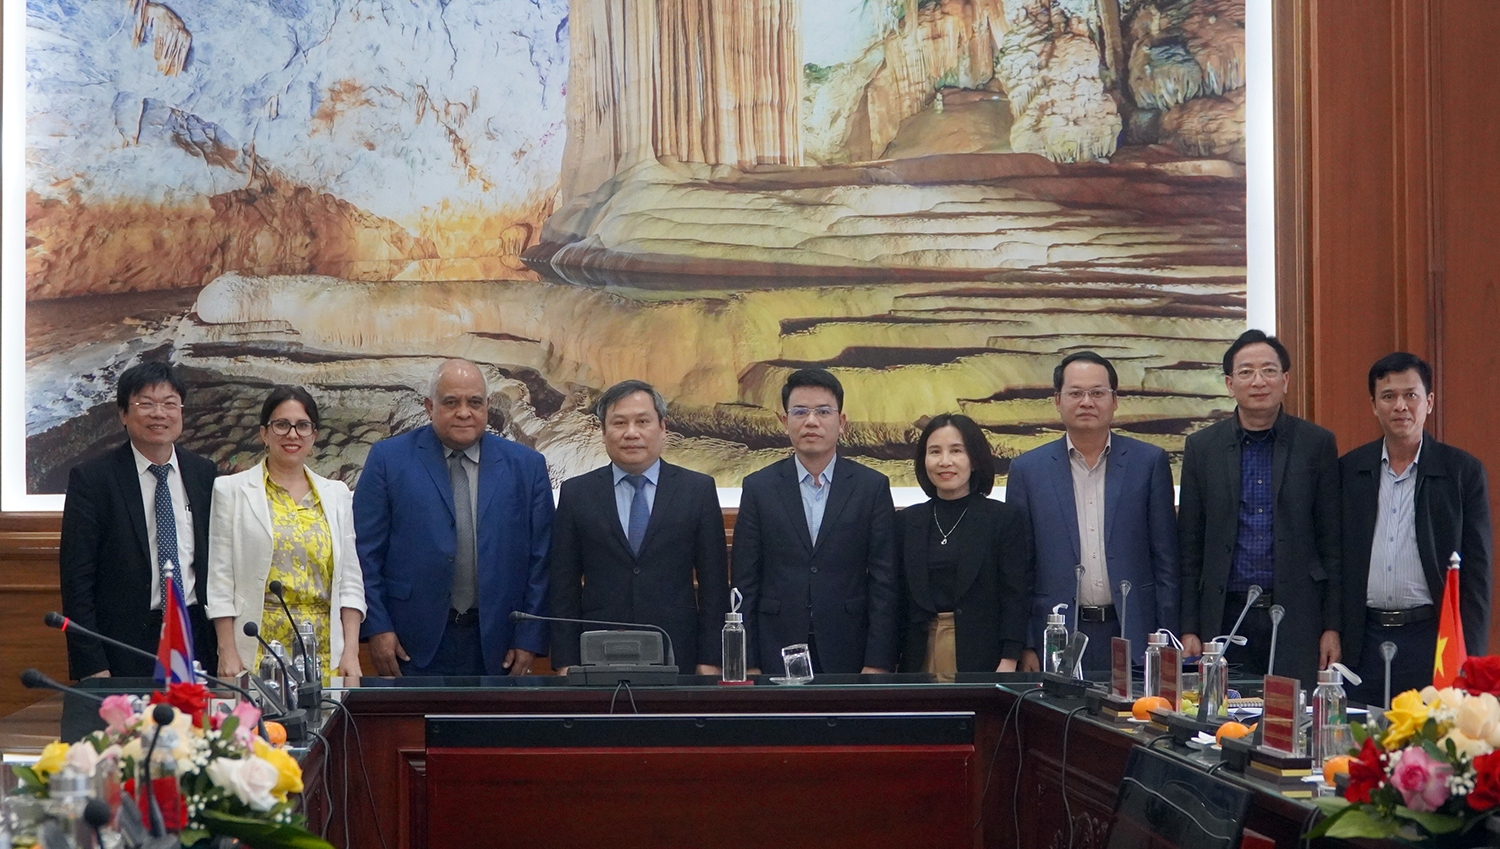 Đại sứ Cộng hòa Cu-ba tại Việt Nam Orlando Hernandez Guillen và đồng chí Bí thư Tỉnh ủy Vũ Đại Thắng chụp ảnh lưu niệm cùng các đại biểu